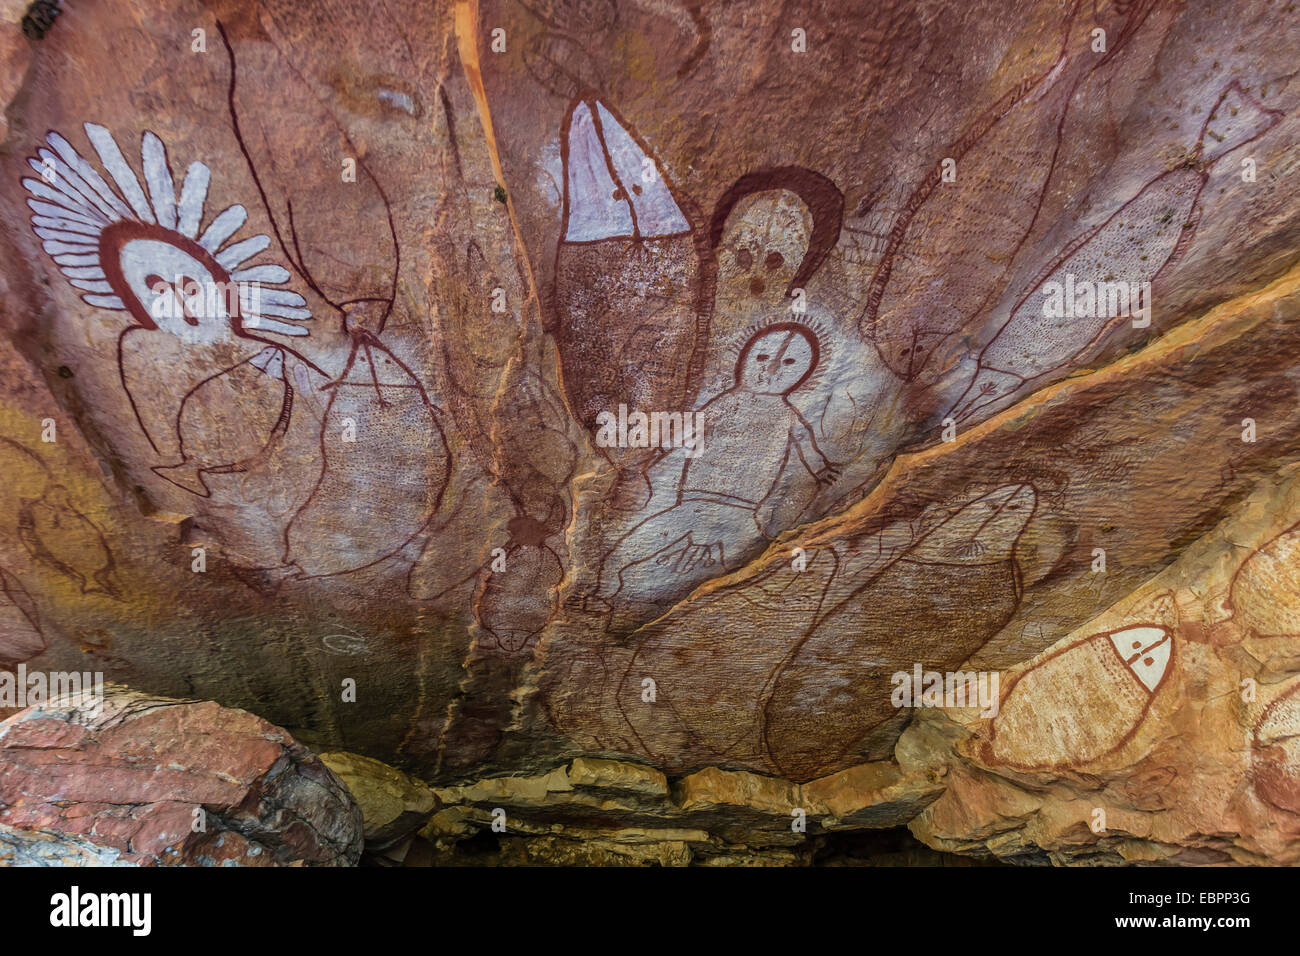 Los Aborígenes Cueva Wandjina Ilustraciones En Cuevas De Piedra Arenisca En Balsa Kimberley